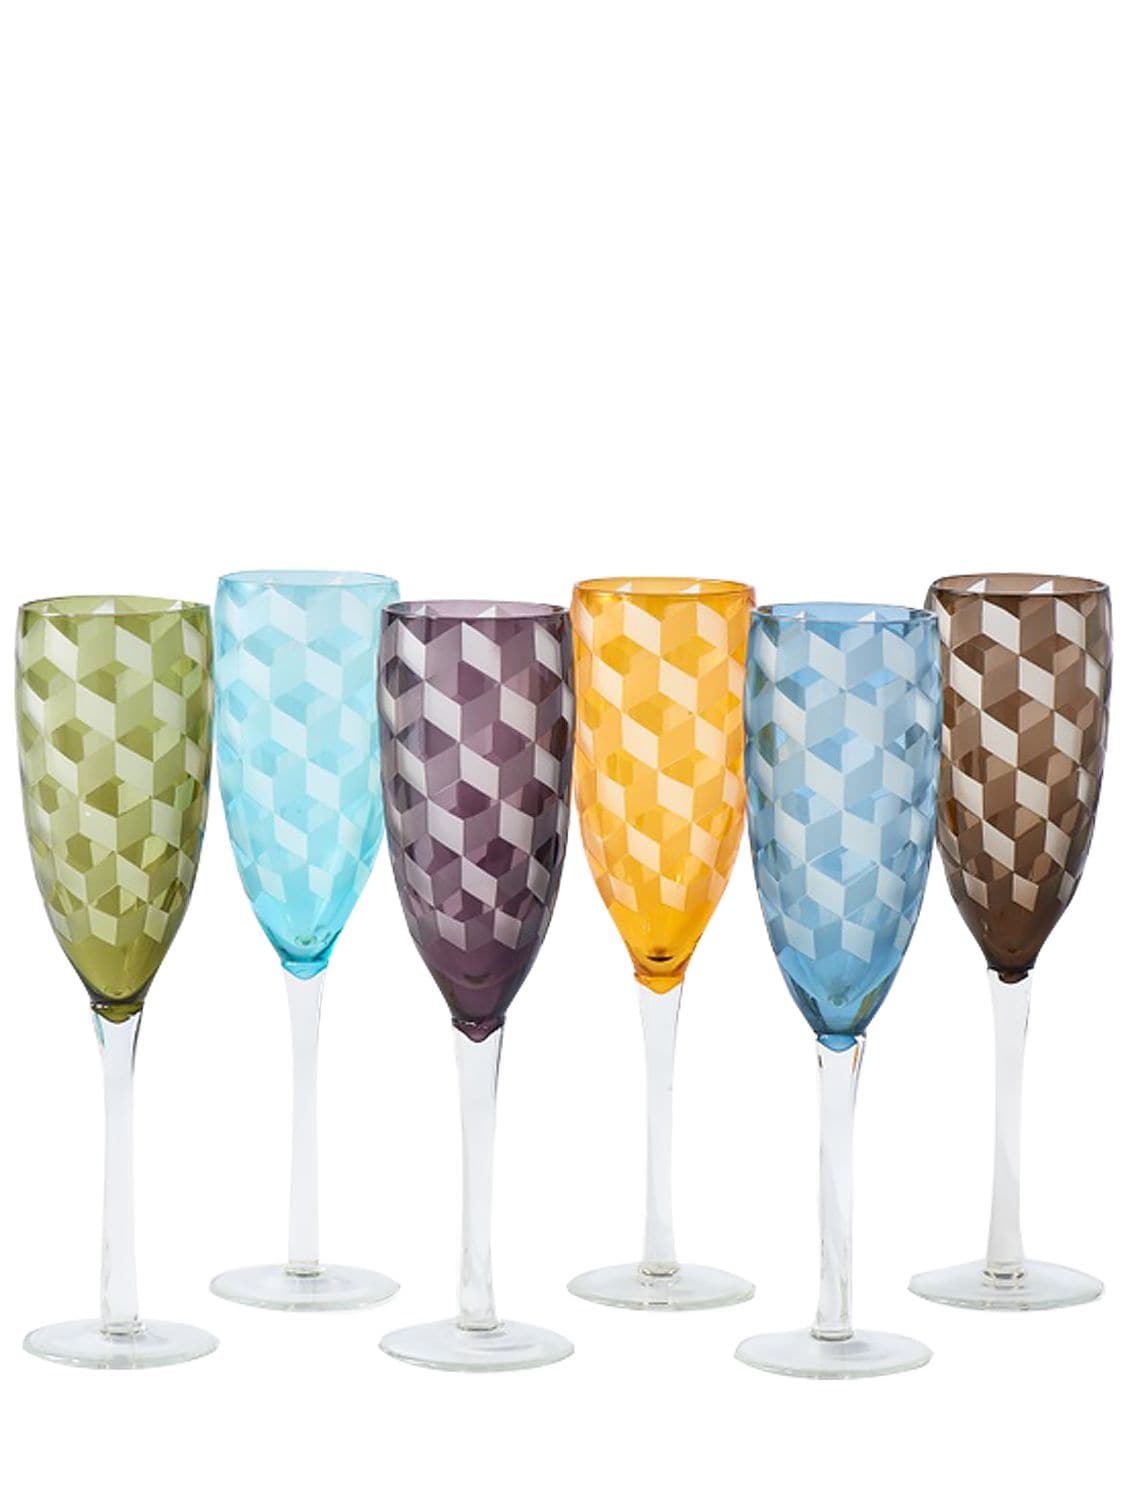 Polspotten Set Of 6 Multicolor Champagne Glasses